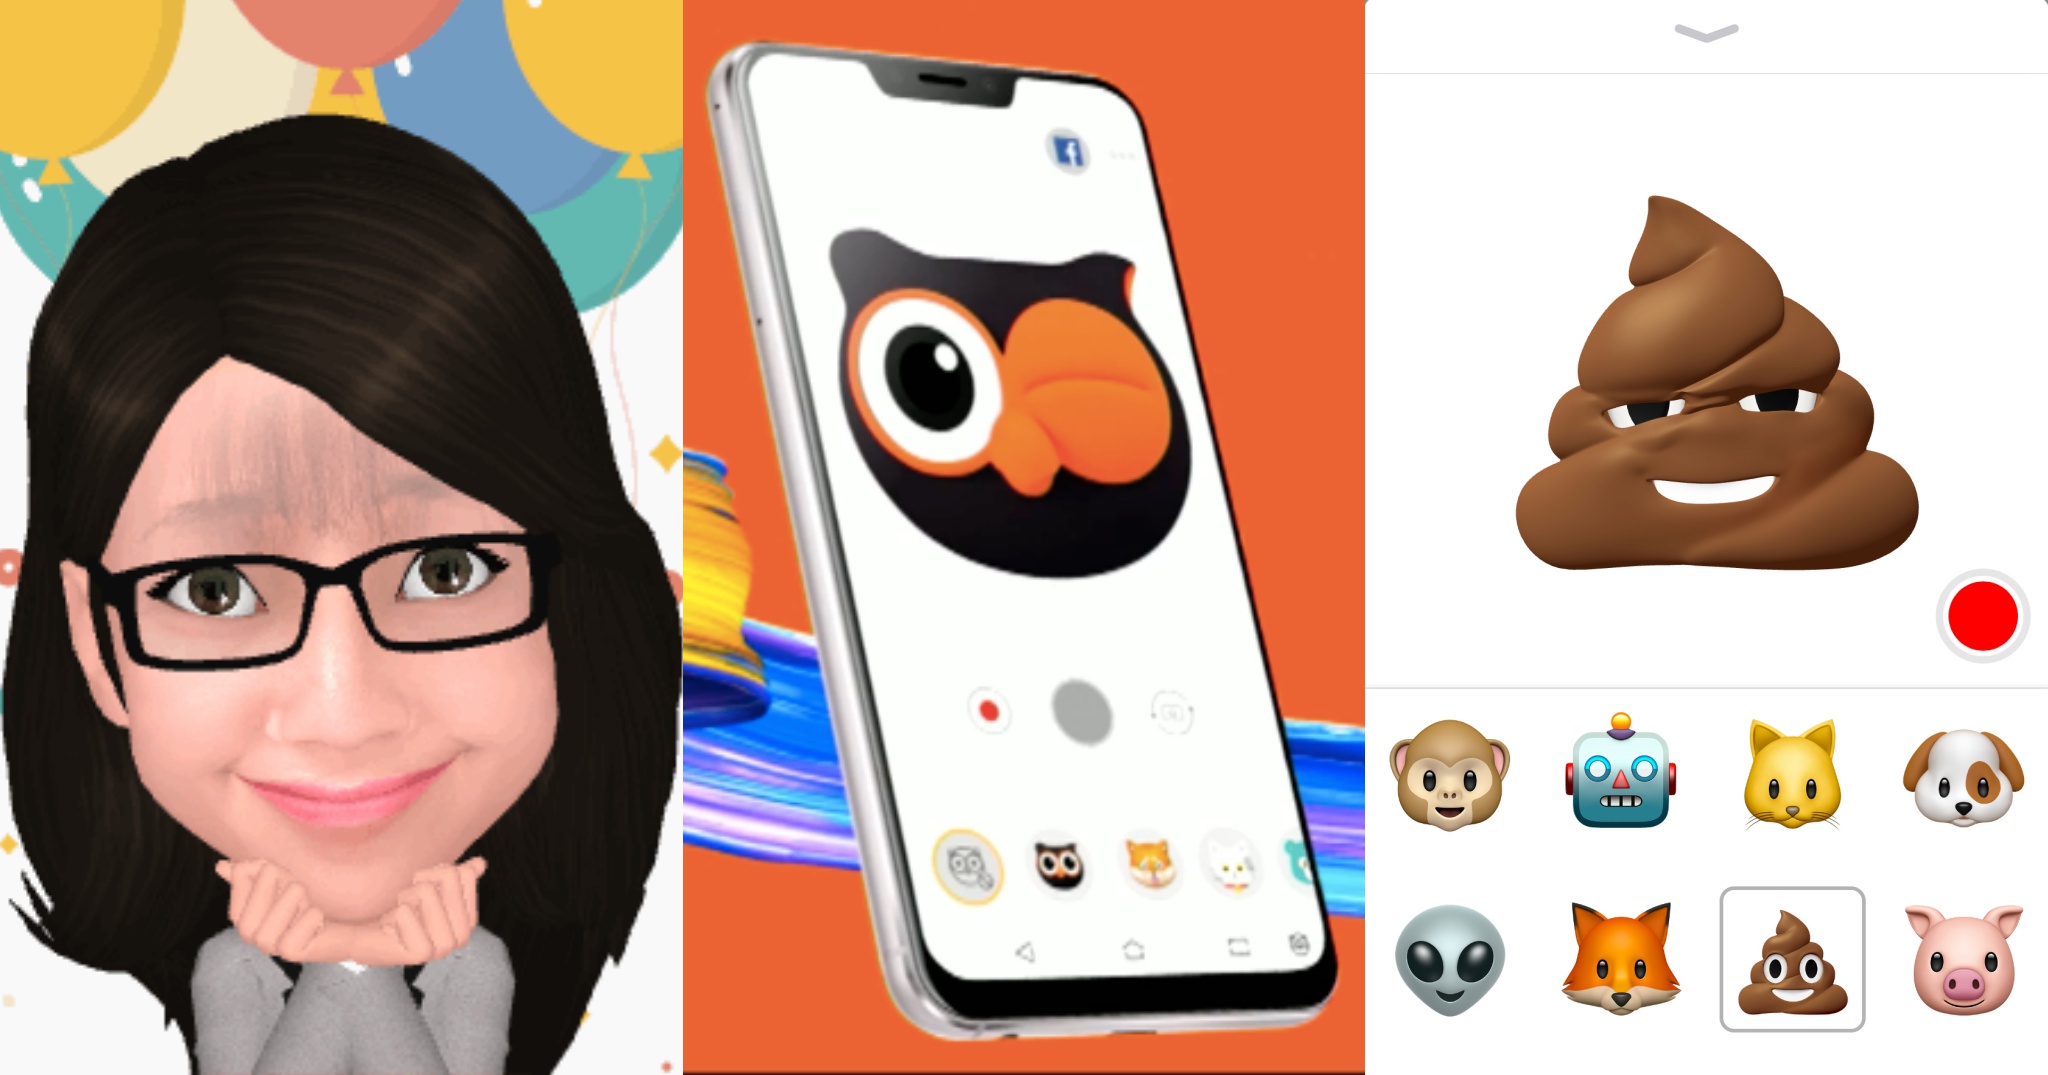 Emoji 3D biết bắt chước người thật có vẻ đang thành xu hướng, anh em có thích không?